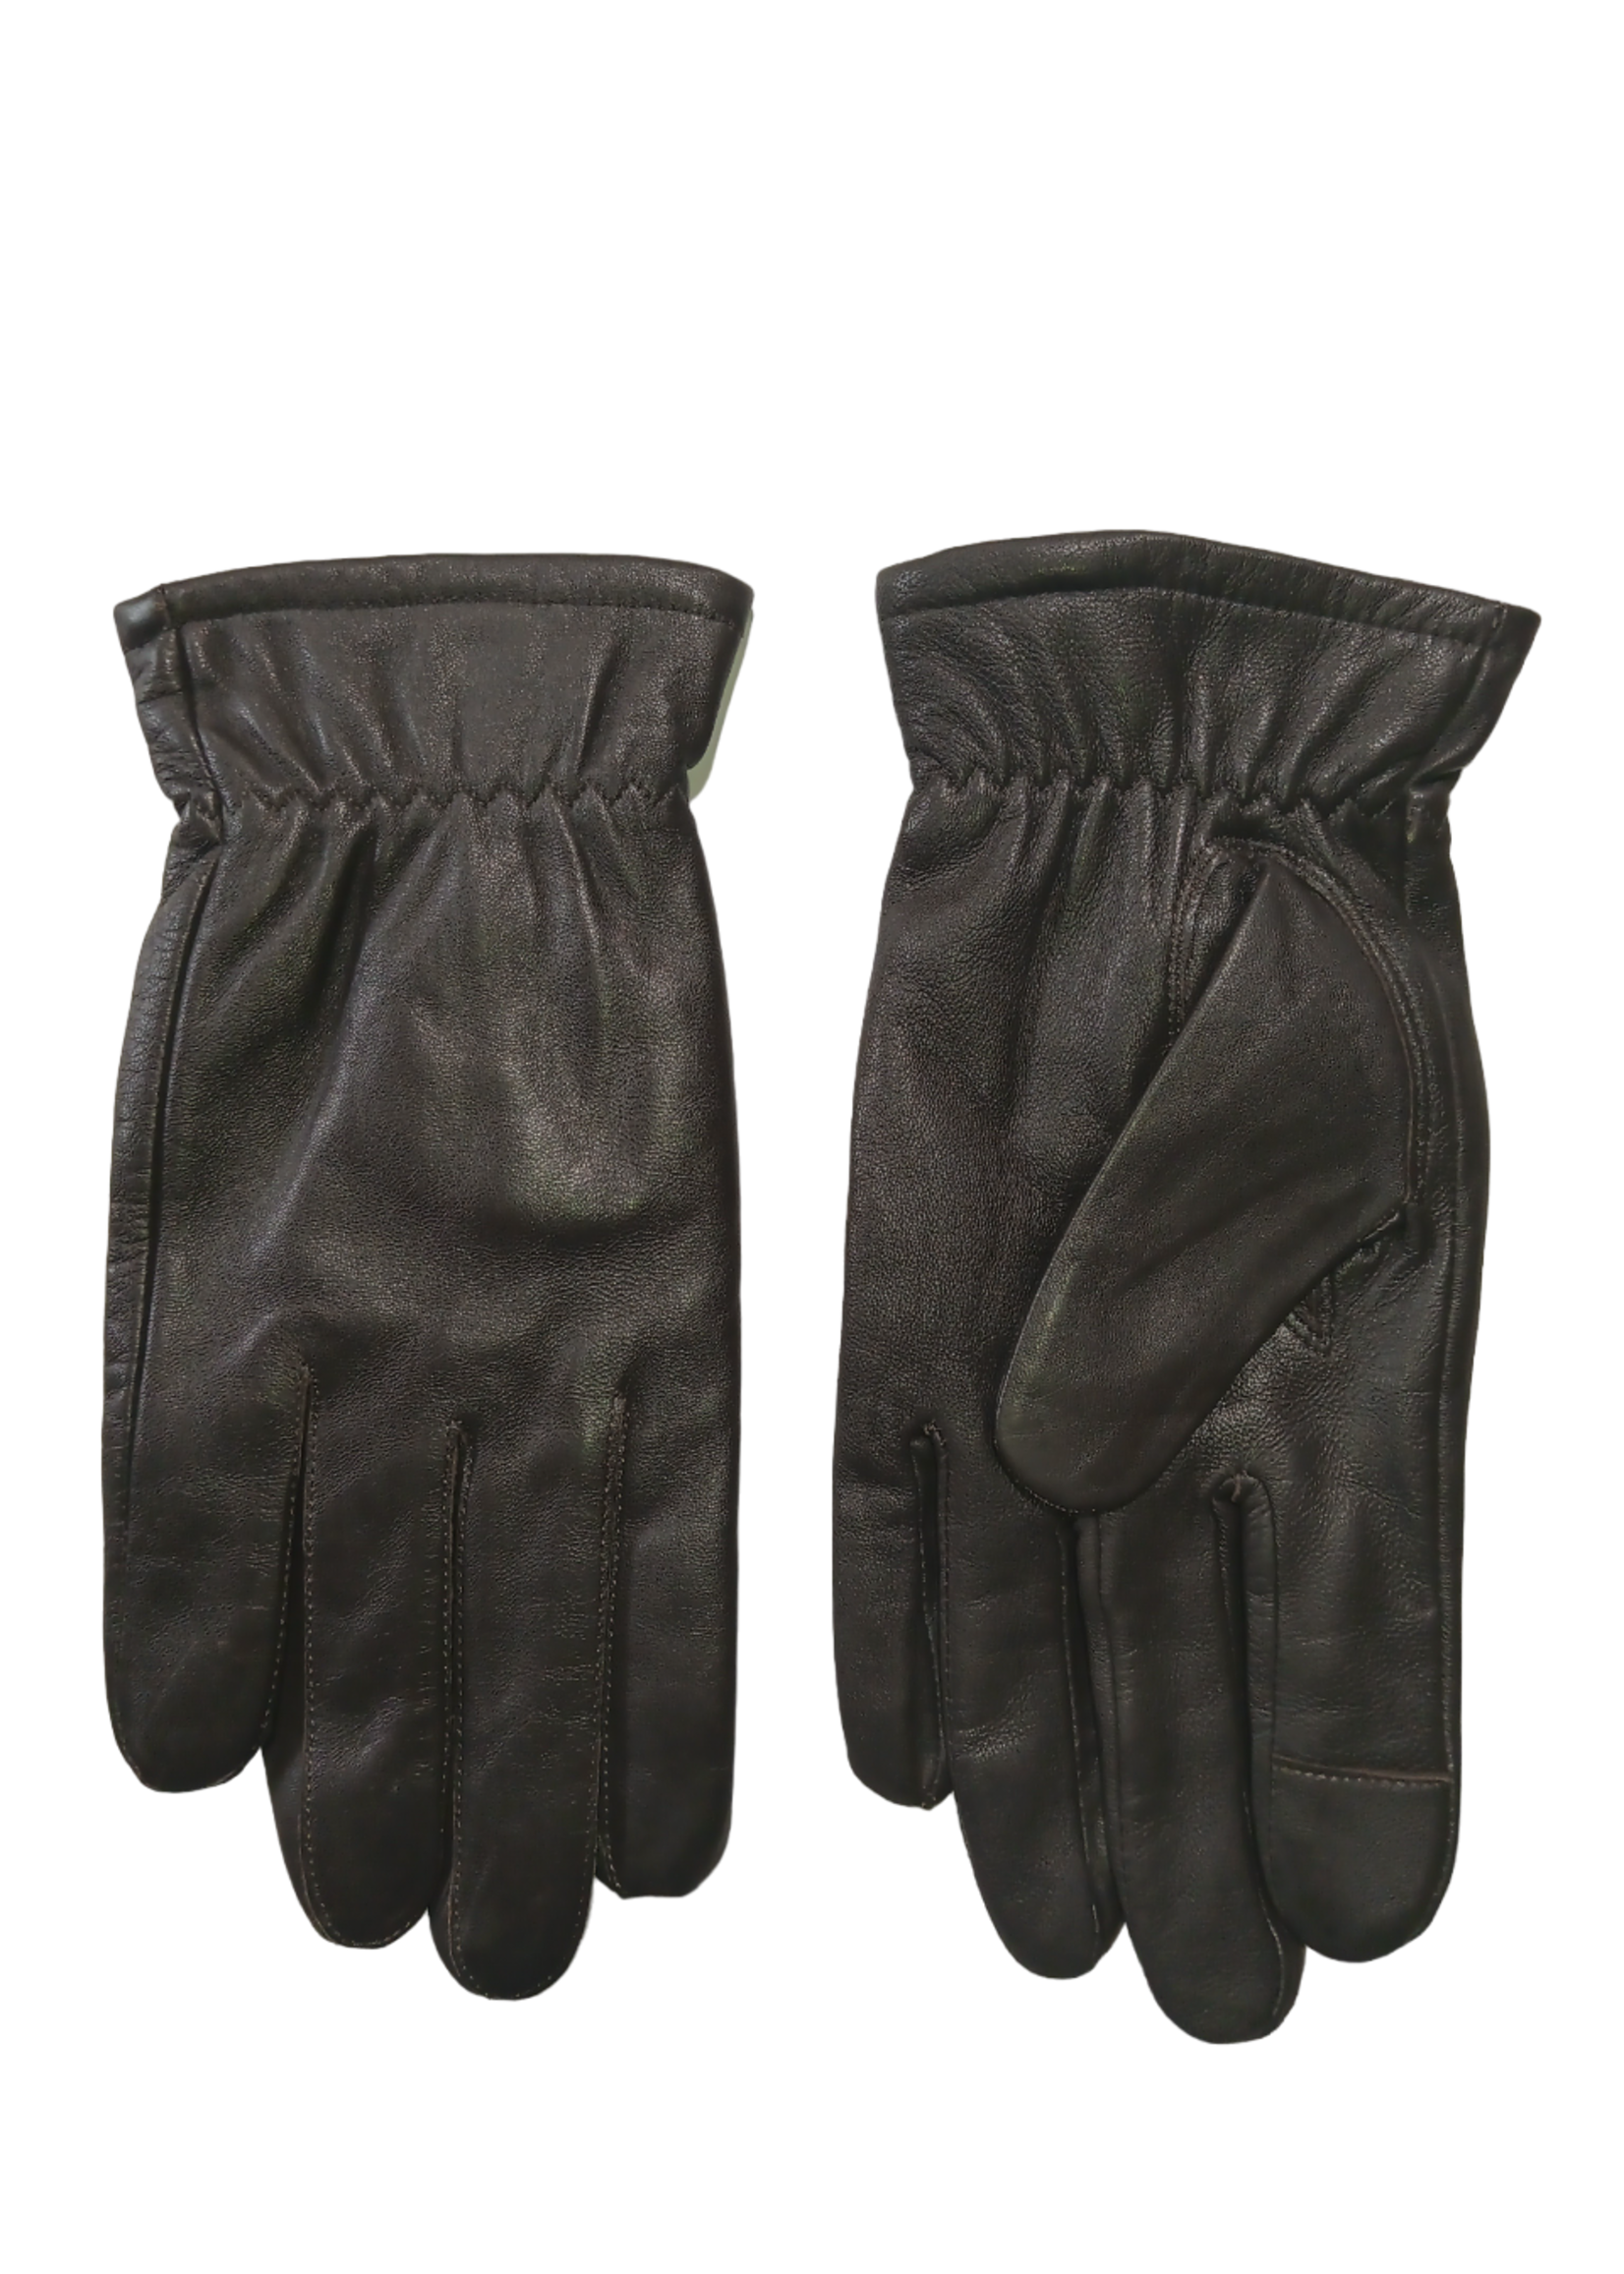 Bloomingdales Bloomingdale's Men's Brown Leather Gloves, M